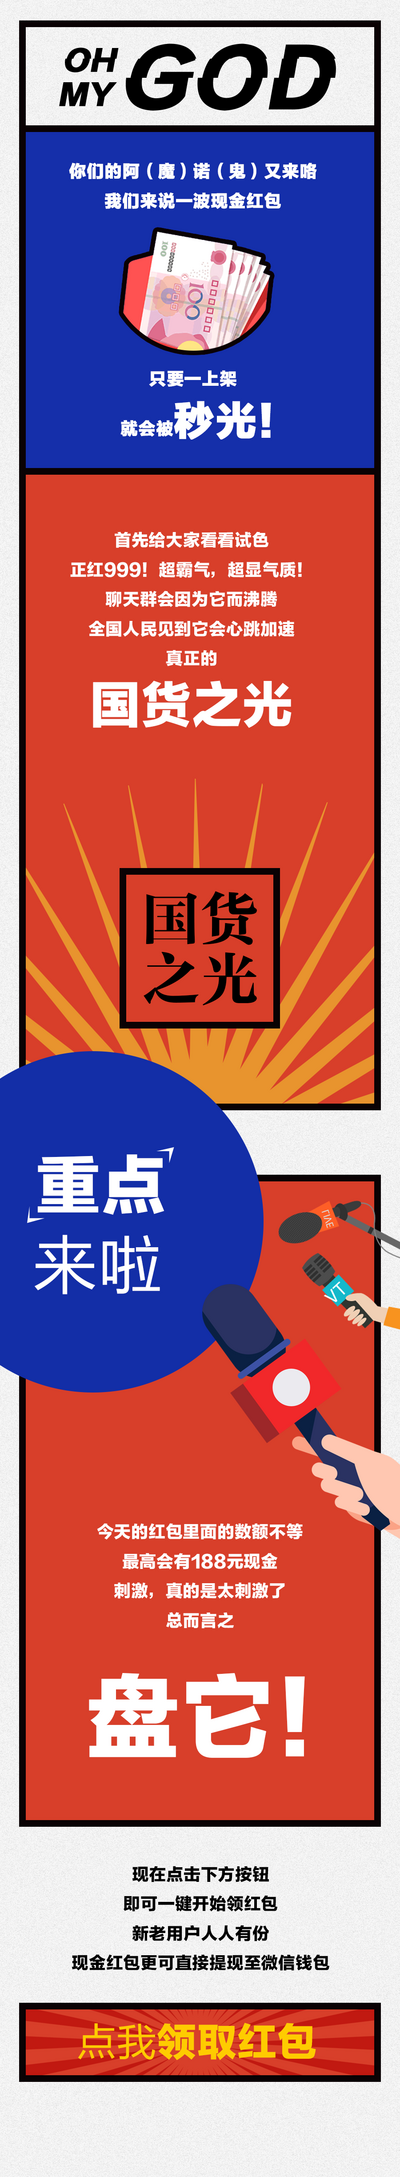 南门网 广告 海报 长图 推文 红包 活动 现金